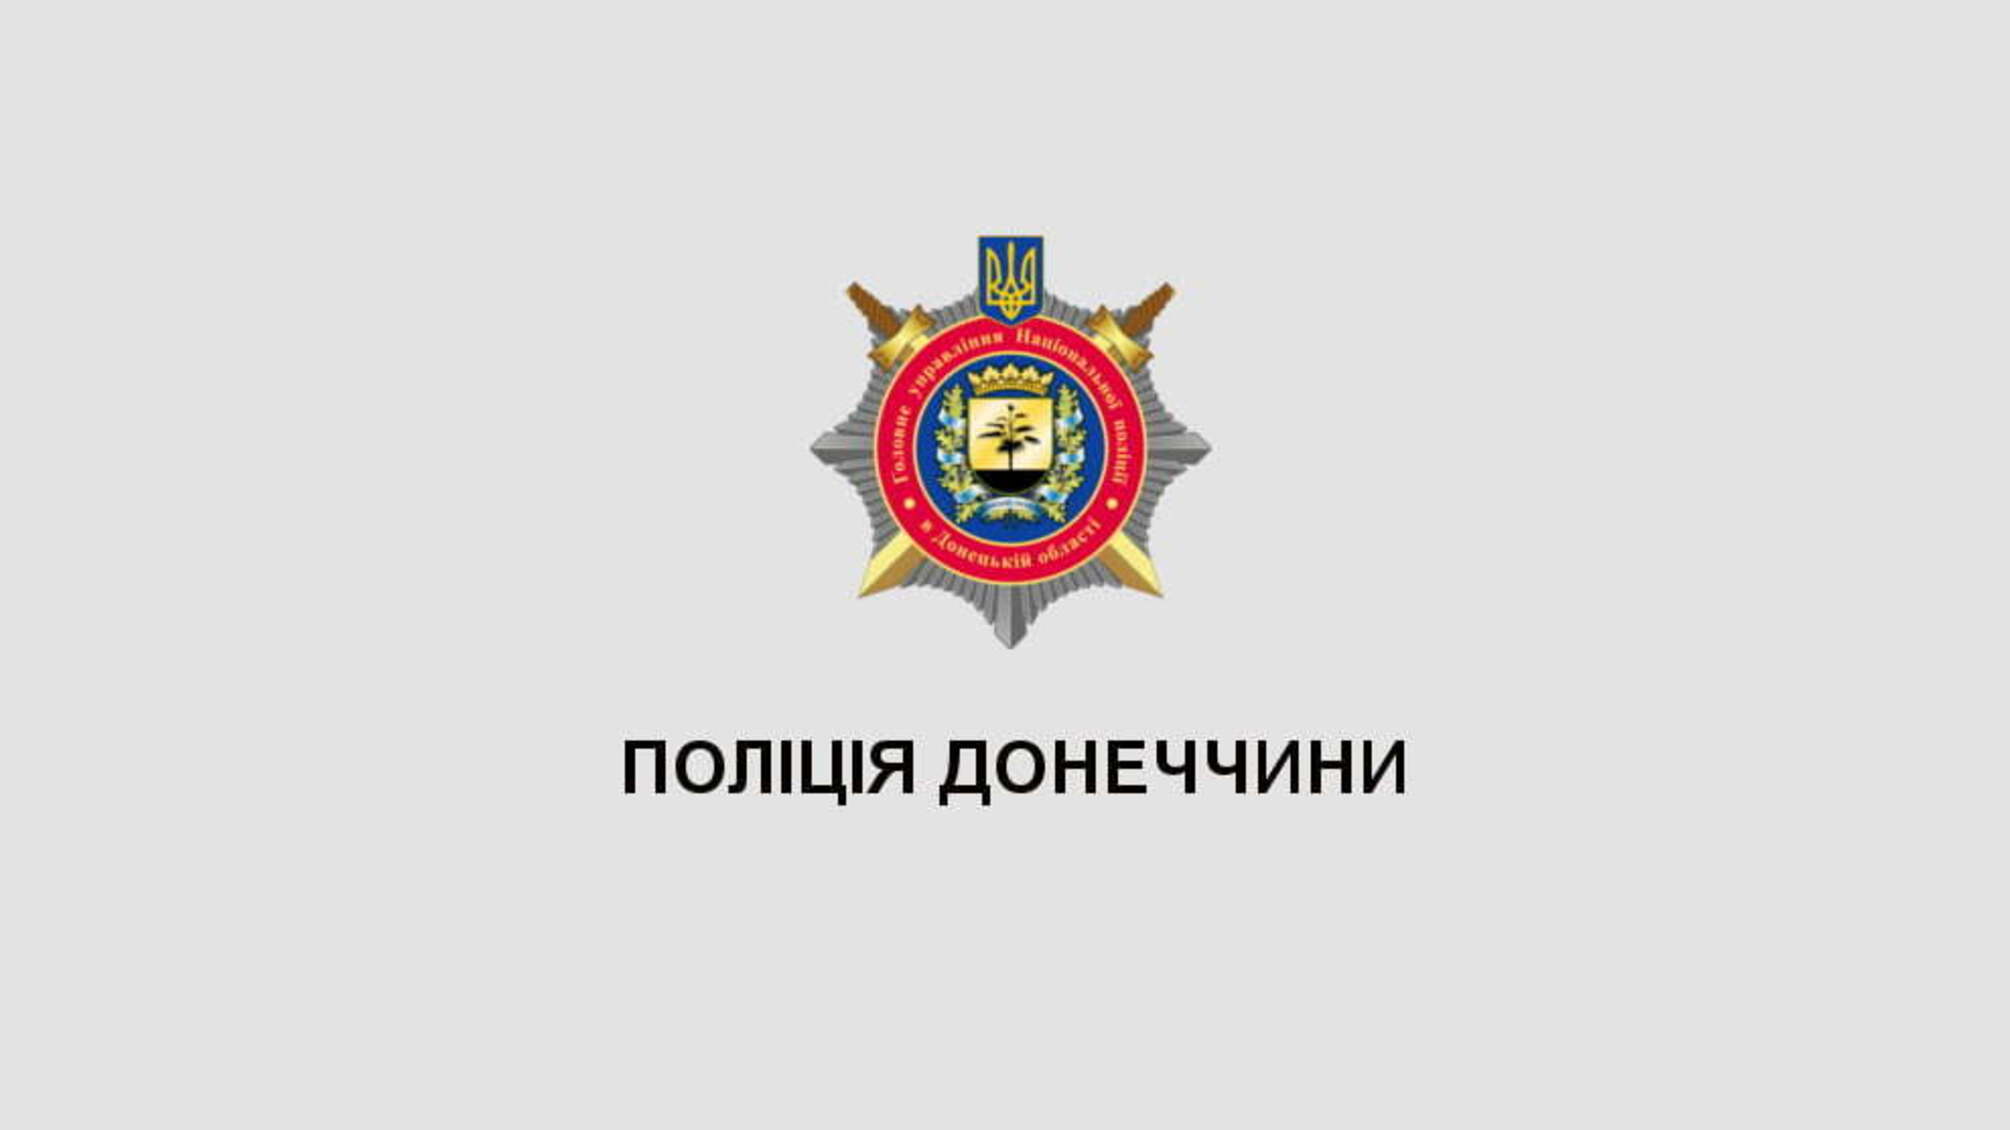 Поліція Донеччини готова до забезпечення публічної безпеки та порядку під час виборів, - Микола Семенишин (ВІДЕО)